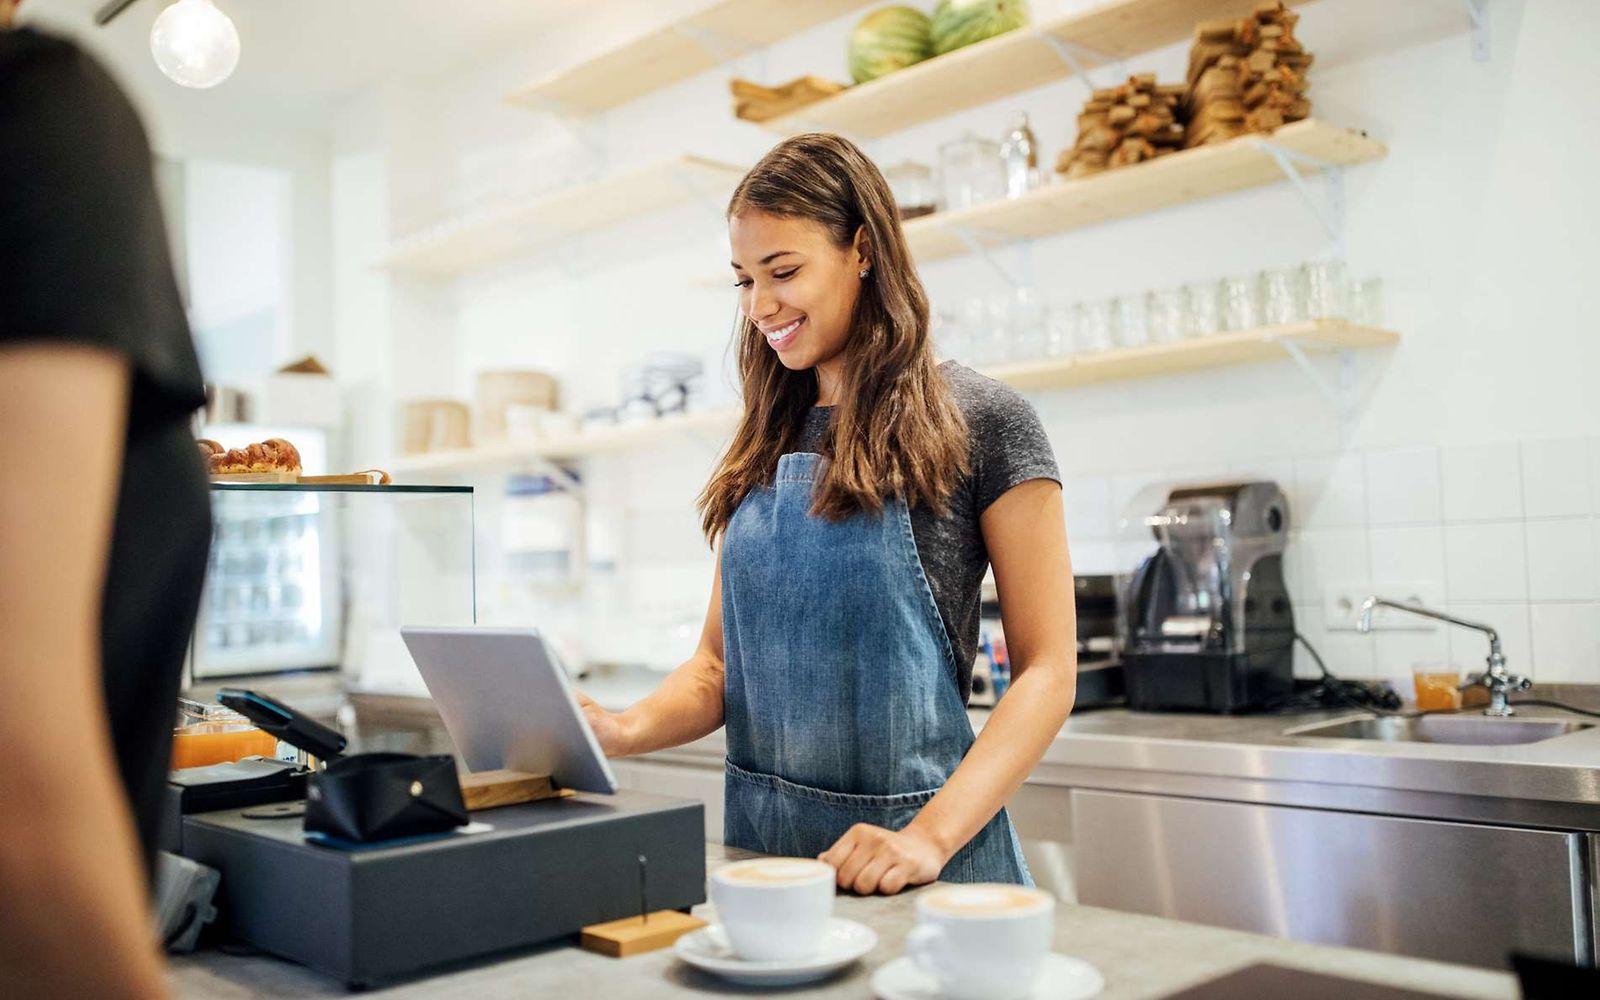 Bild: Junge Frau arbeitet in einem Café